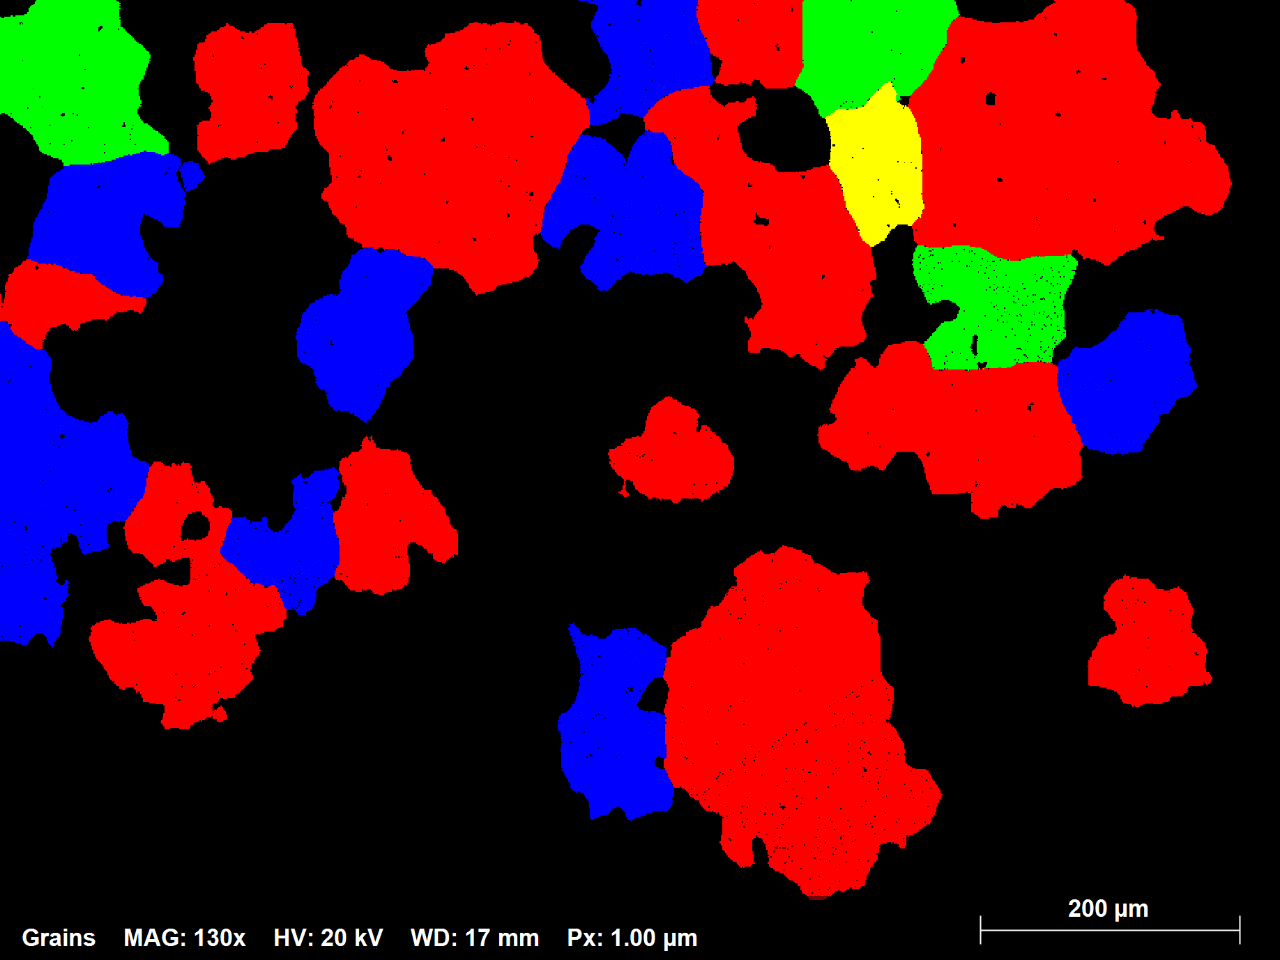 Abb. 1.3: Teilmenge des EBSD-Maps der Ni-Legierung, die in Zufallsfarben alle Körner mit einem Äquivalentdurchmesser größer als 70 Mikrometer anzeigt. 1% der Gesamtzahl der Körner machen 42% der Mapfläche aus.